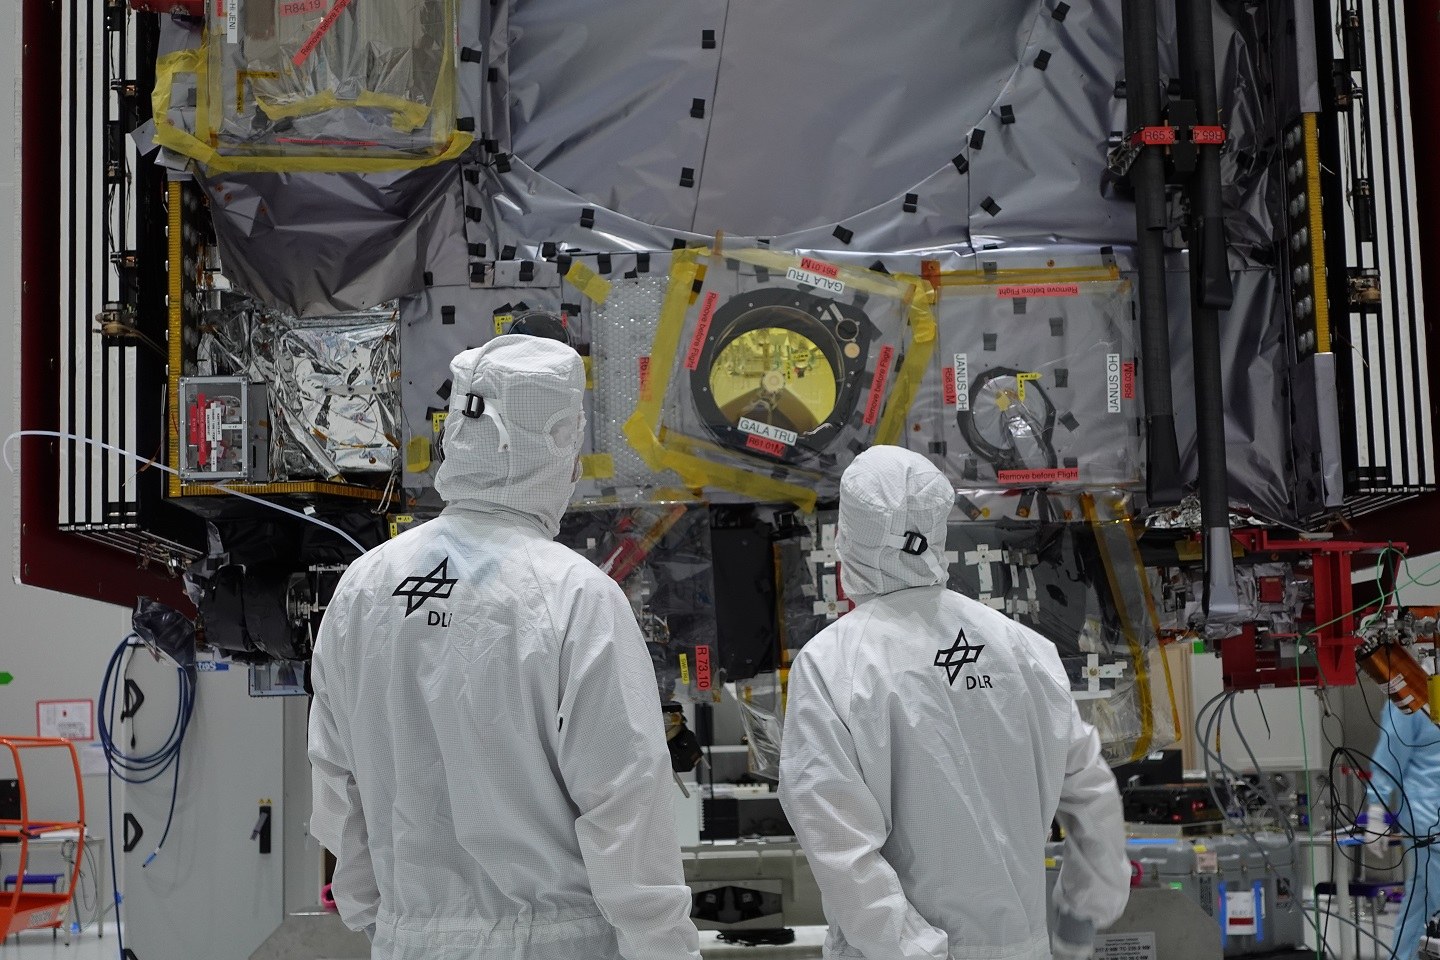 Zwei DLR-Mitarbeiter stehen im Reinraum vor dem JUICE-Satelliten.